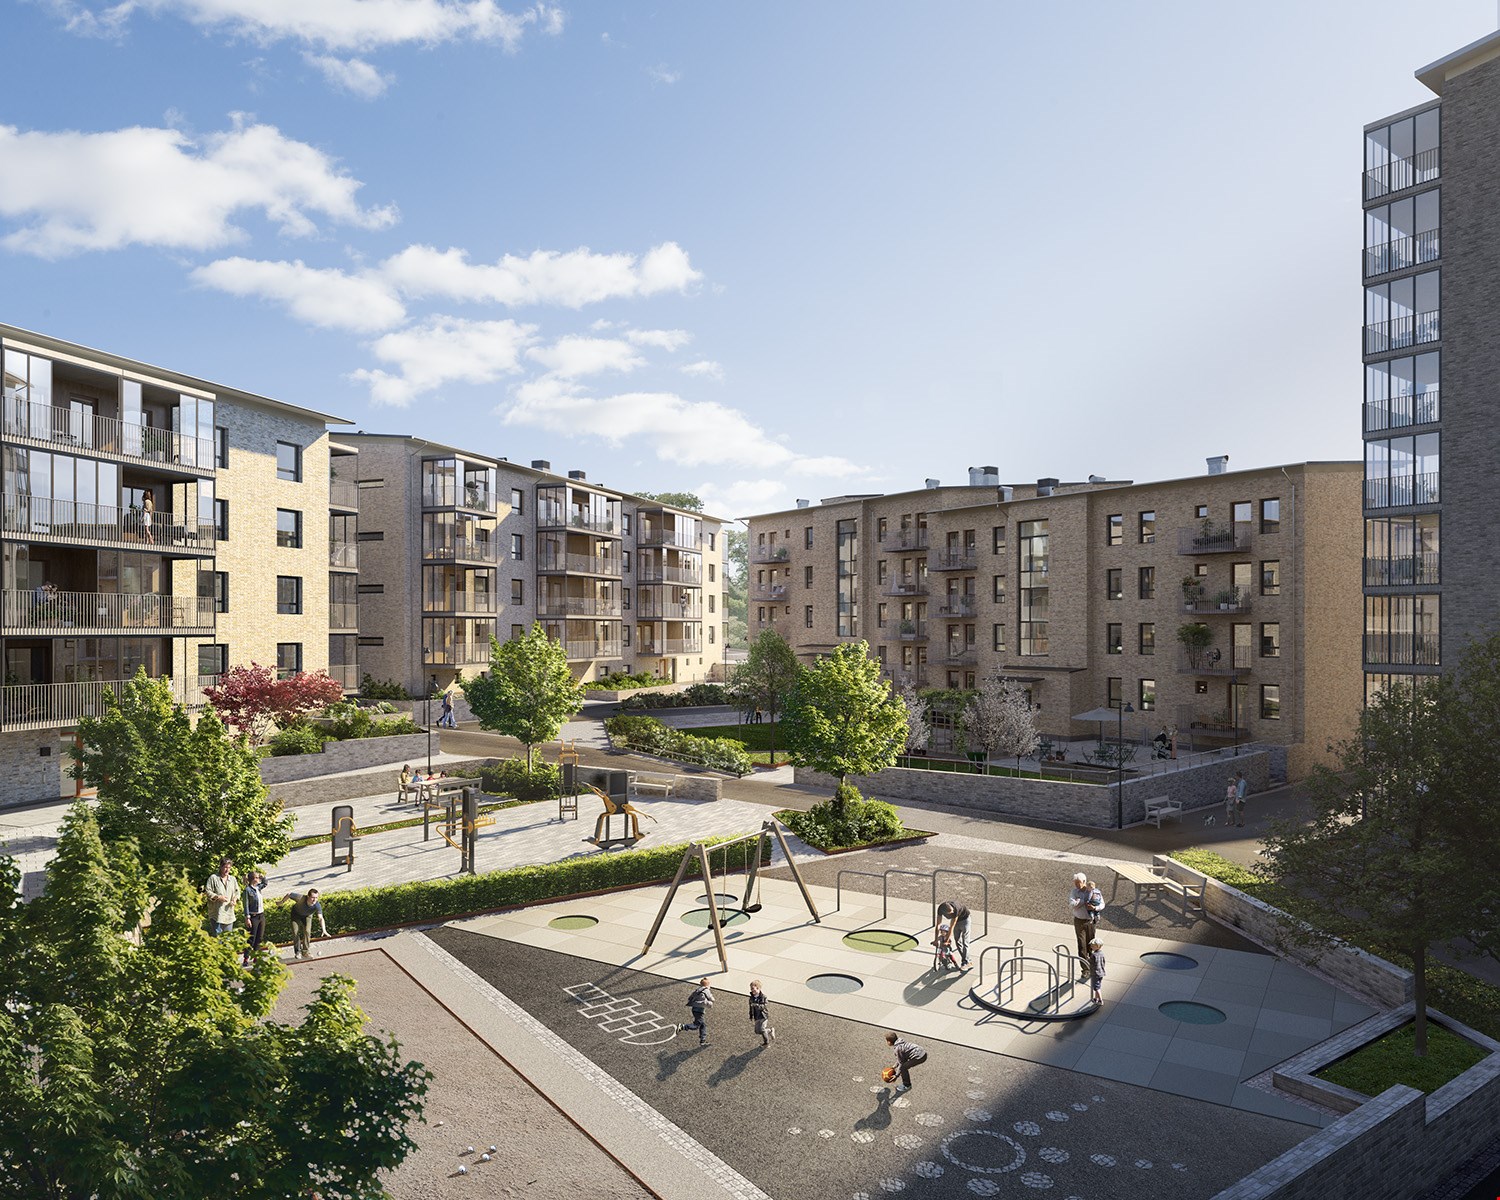 Brf Guldpennan i Uddevalla är ett av Sveriges bästa bostadsprojekt